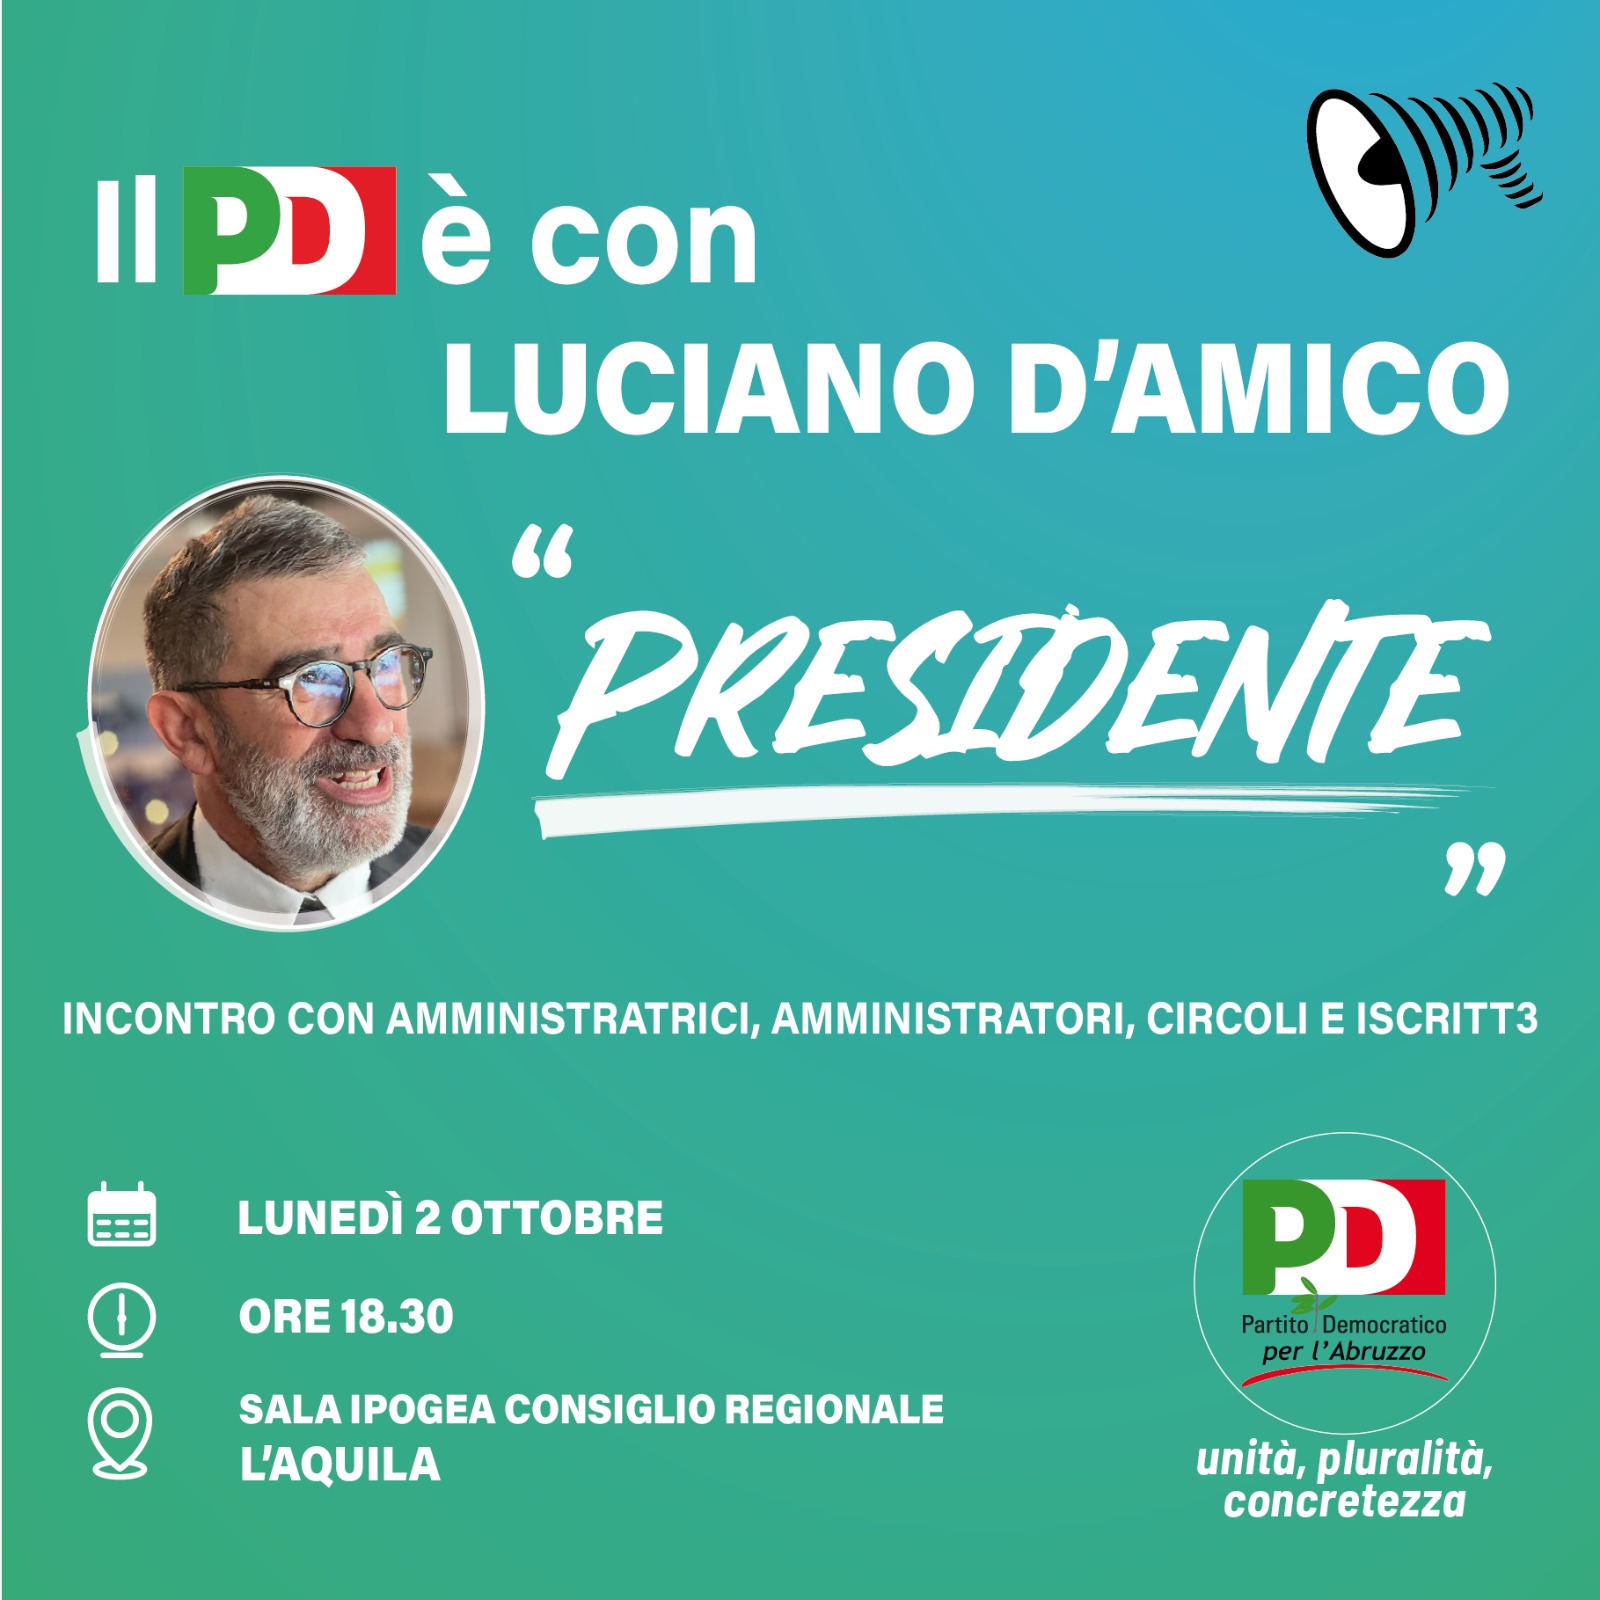 Il 2 ottobre Luciano D’Amico incontra il Partito Democratico abruzzese